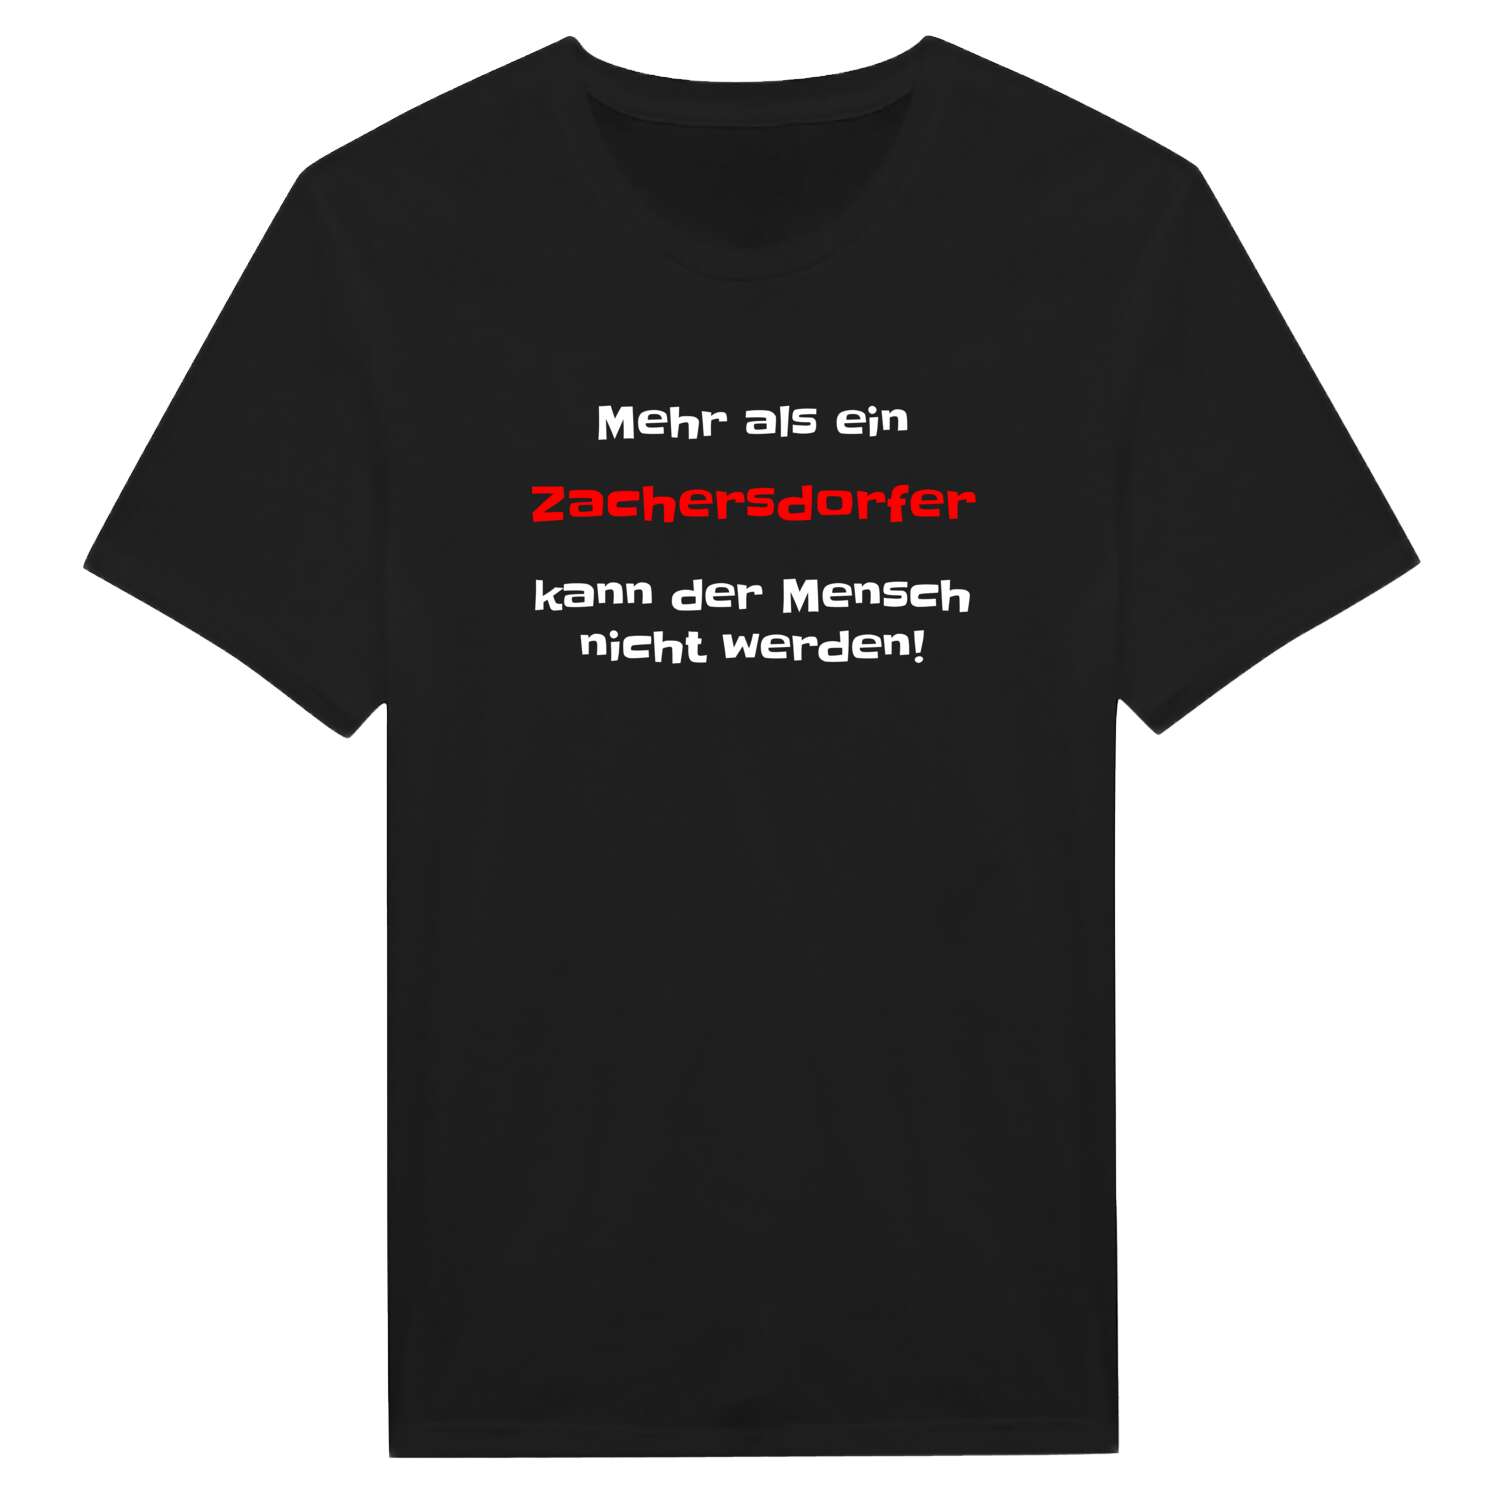 Zachersdorf T-Shirt »Mehr als ein«